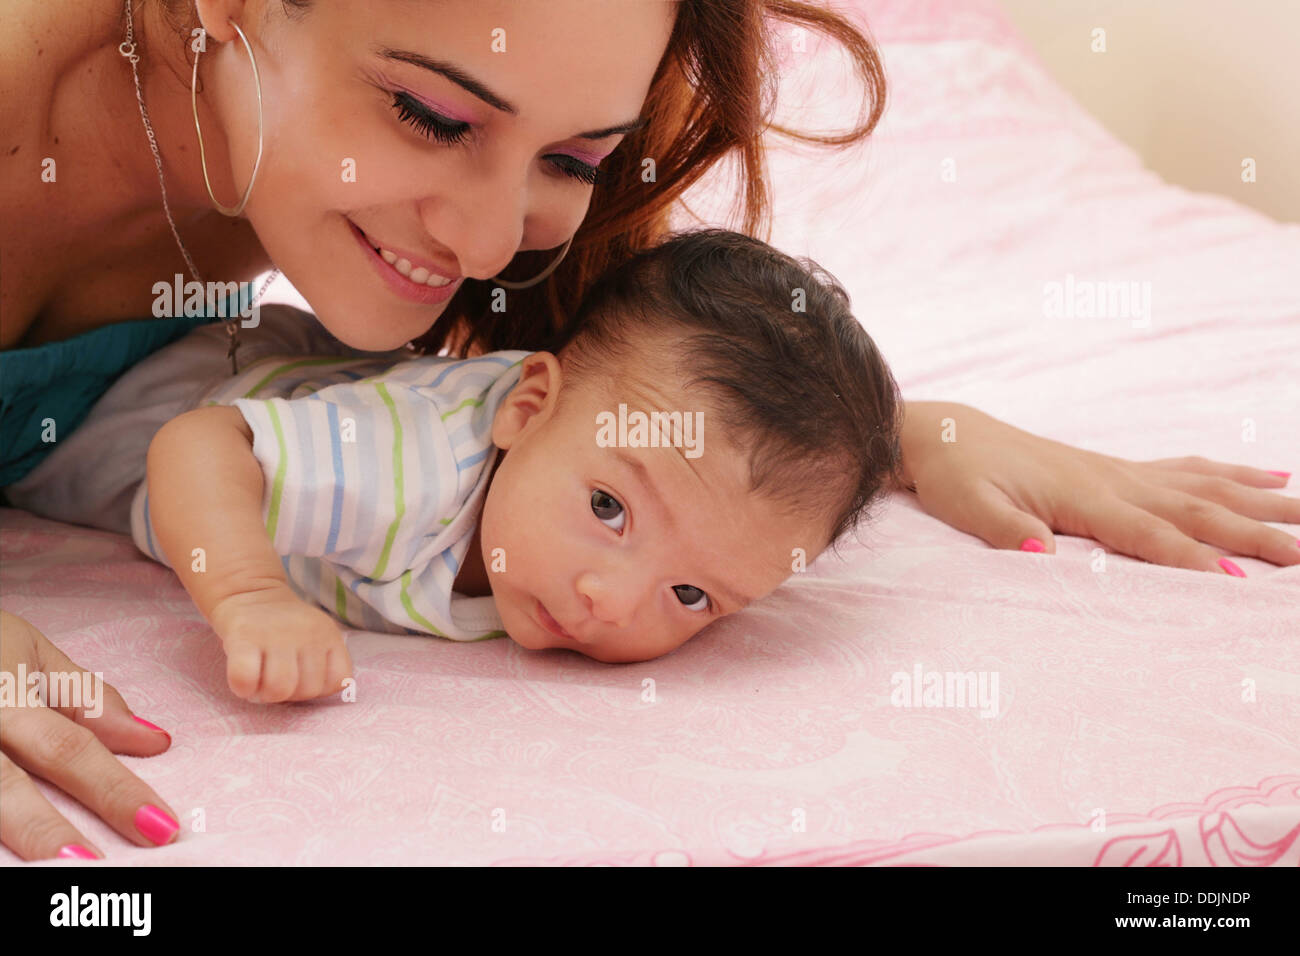 hispanic mother and her newborn baby Stock Photo